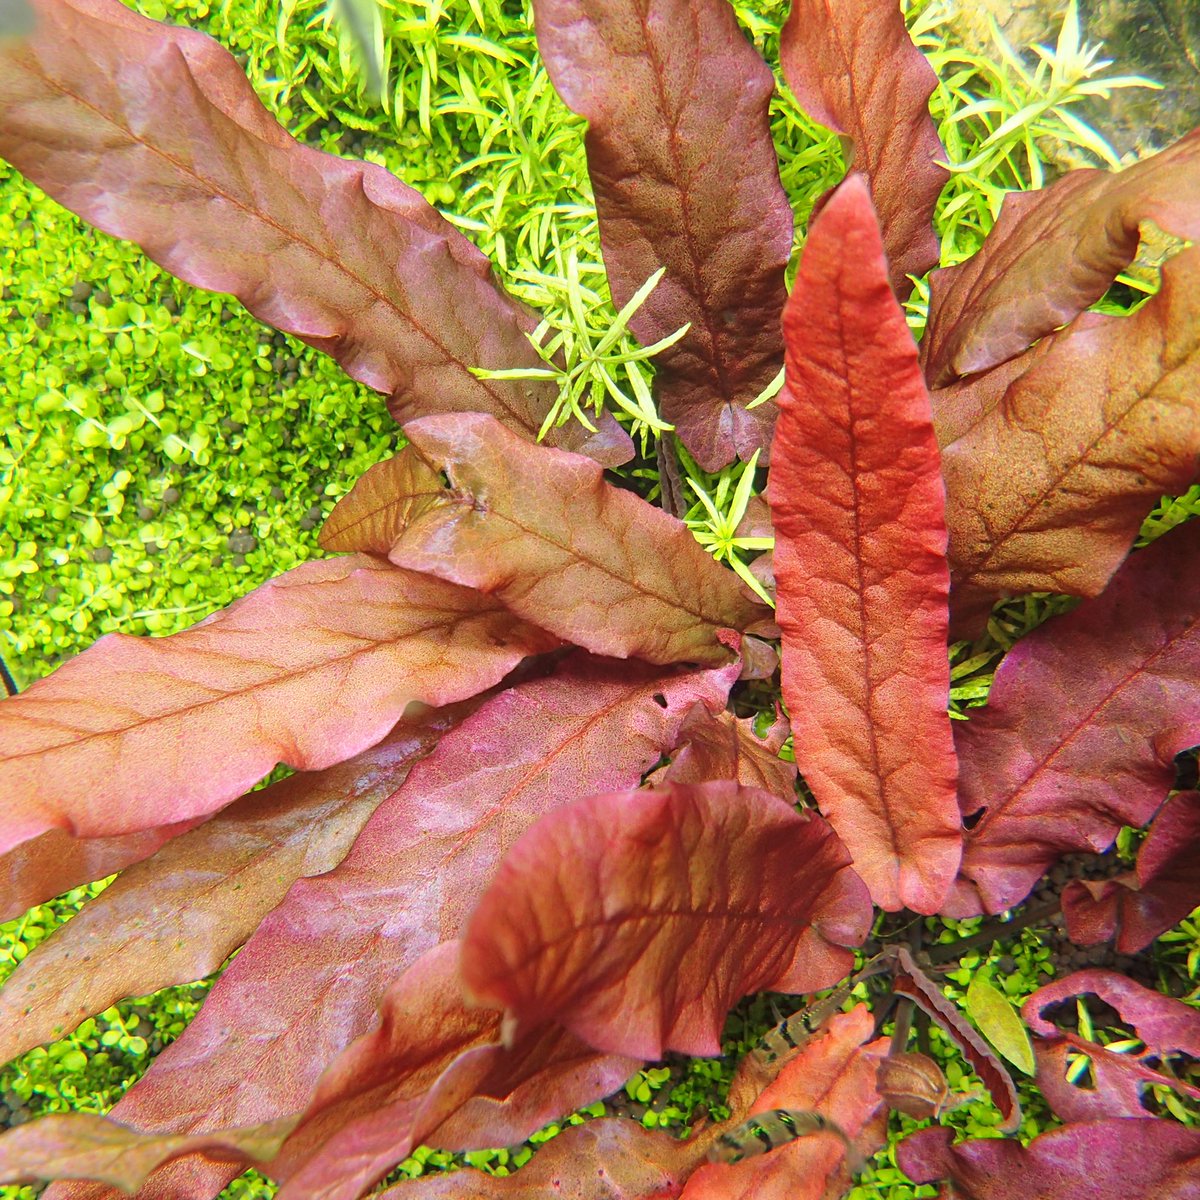 Aquarium Kind Sur Twitter いつだったかの入荷でありましたバルクラヤ ロンギフォリア レッドがやっとこさ発芽してきました ここまで来るともう安心 販売開始です 浮葉を出さないスイレンの仲間で クリプトコリネのような細葉と赤い葉色が一際目立つ